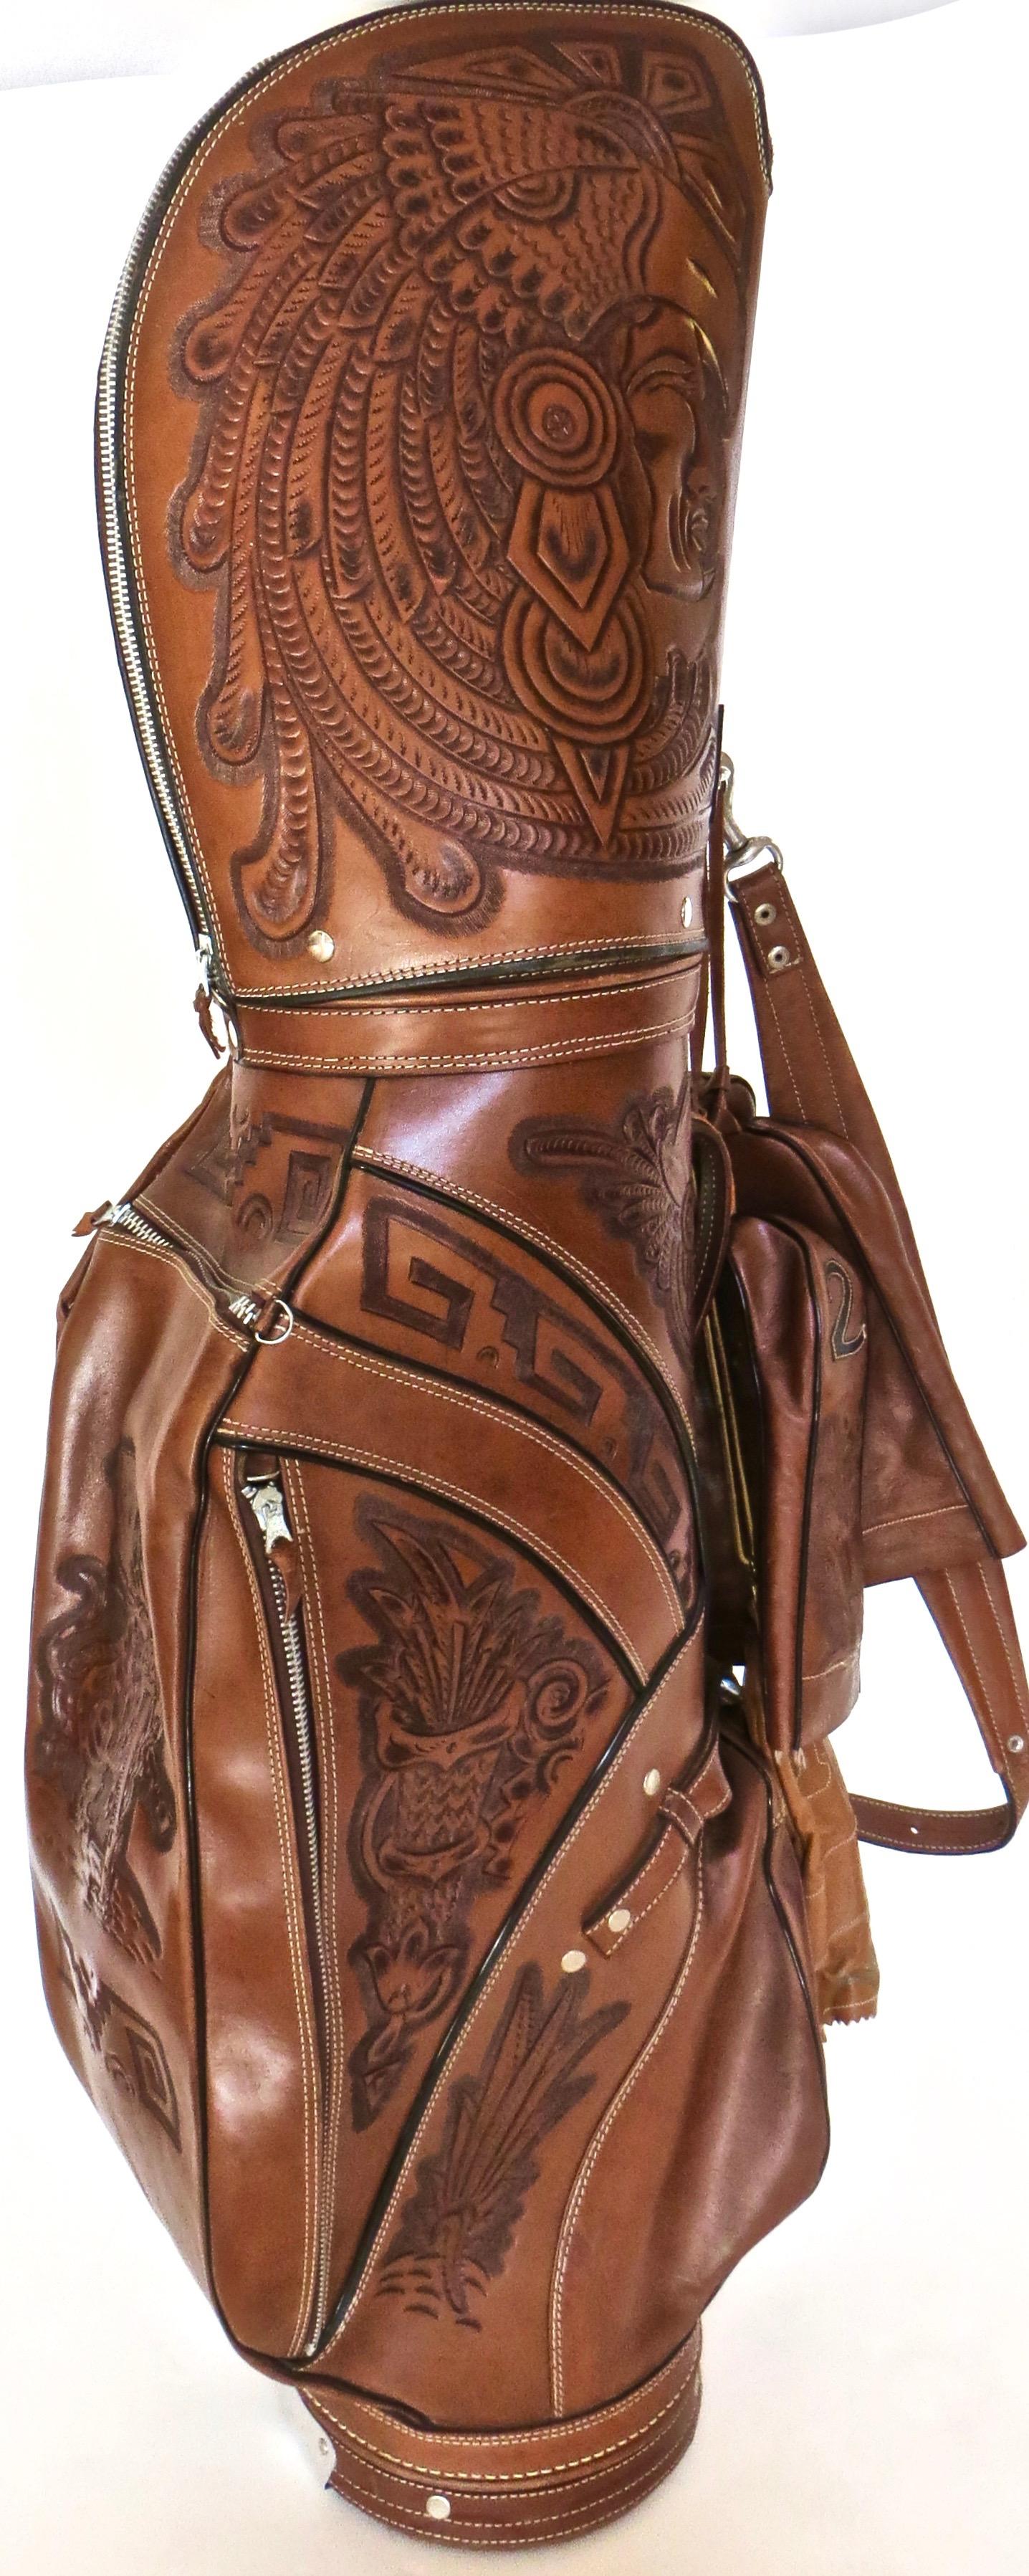 Details more than 79 designer golf bag super hot - in.duhocakina